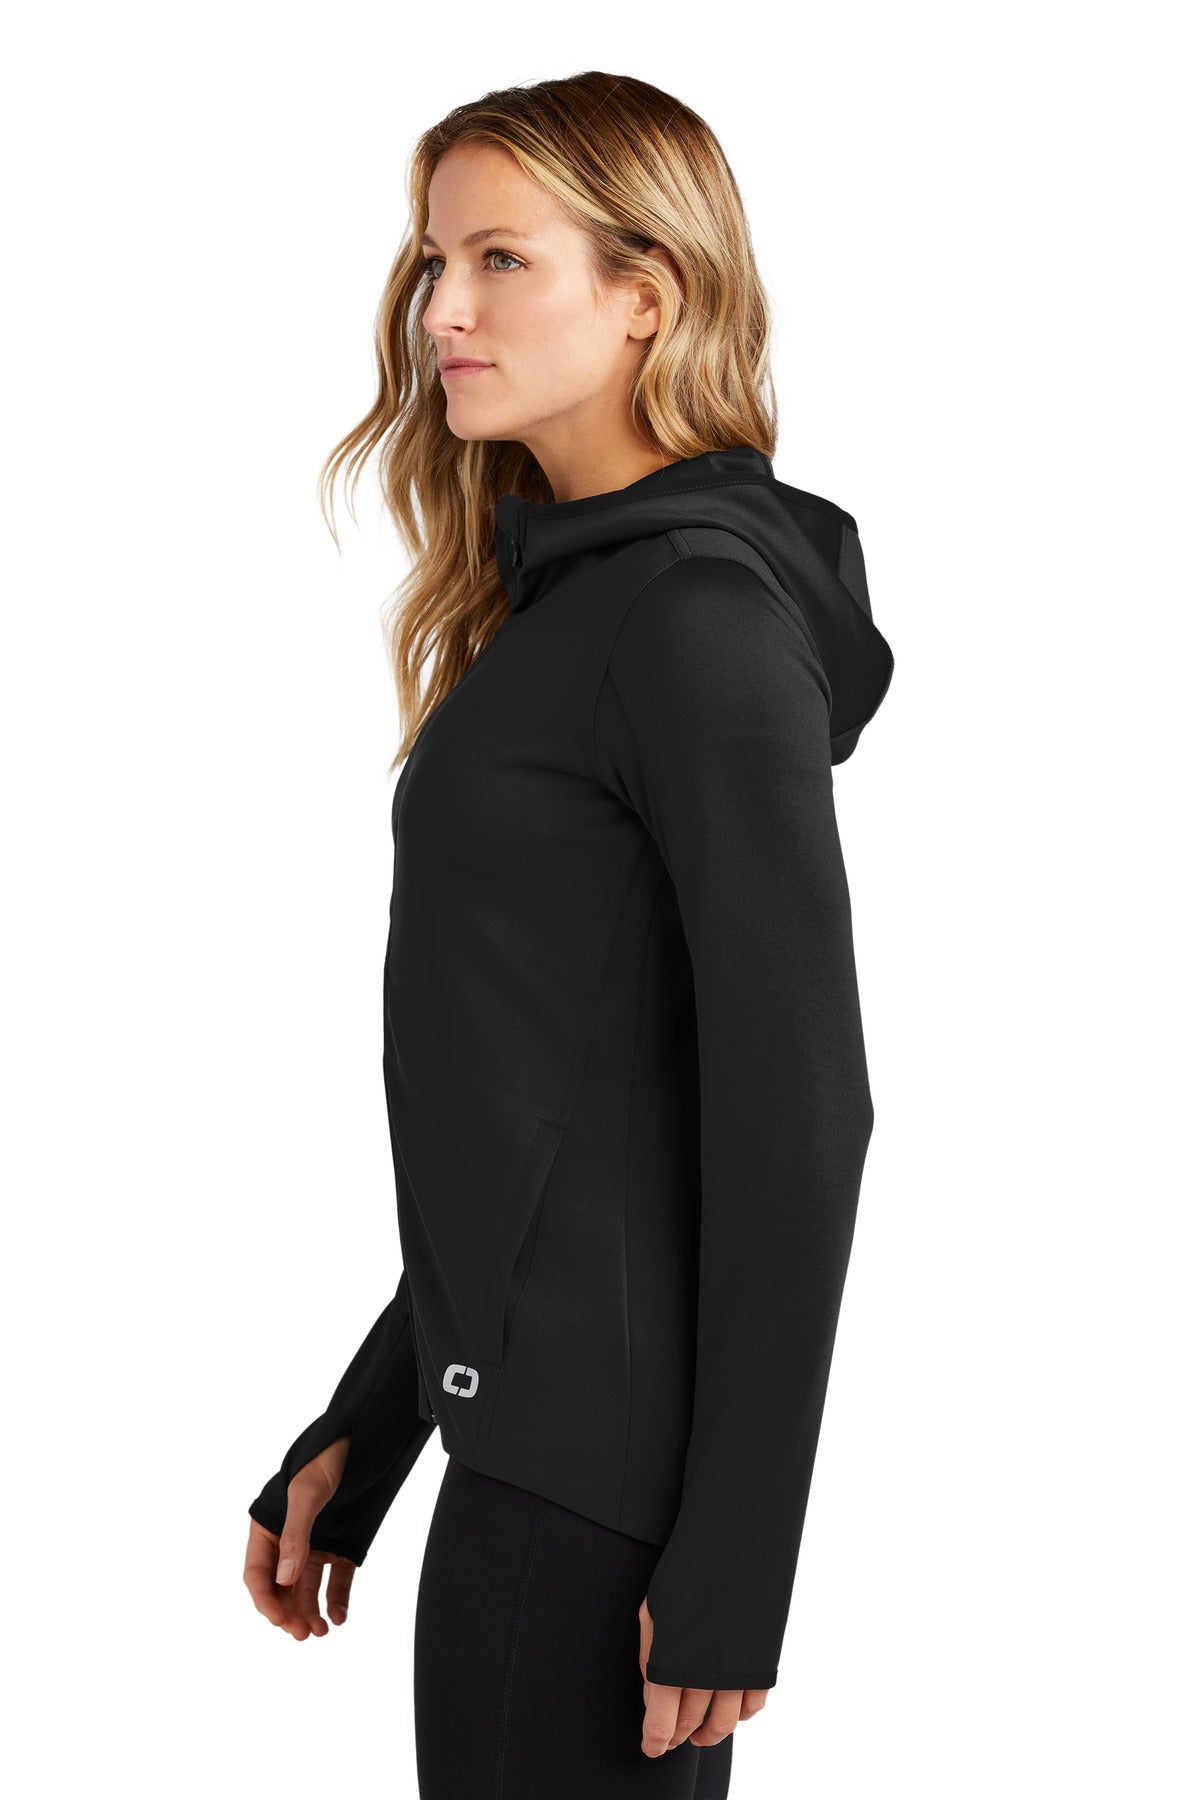 OGIO ® ENDURANCE Ladies Stealth Full-Zip Jacket. LOE728 - DFW Impression